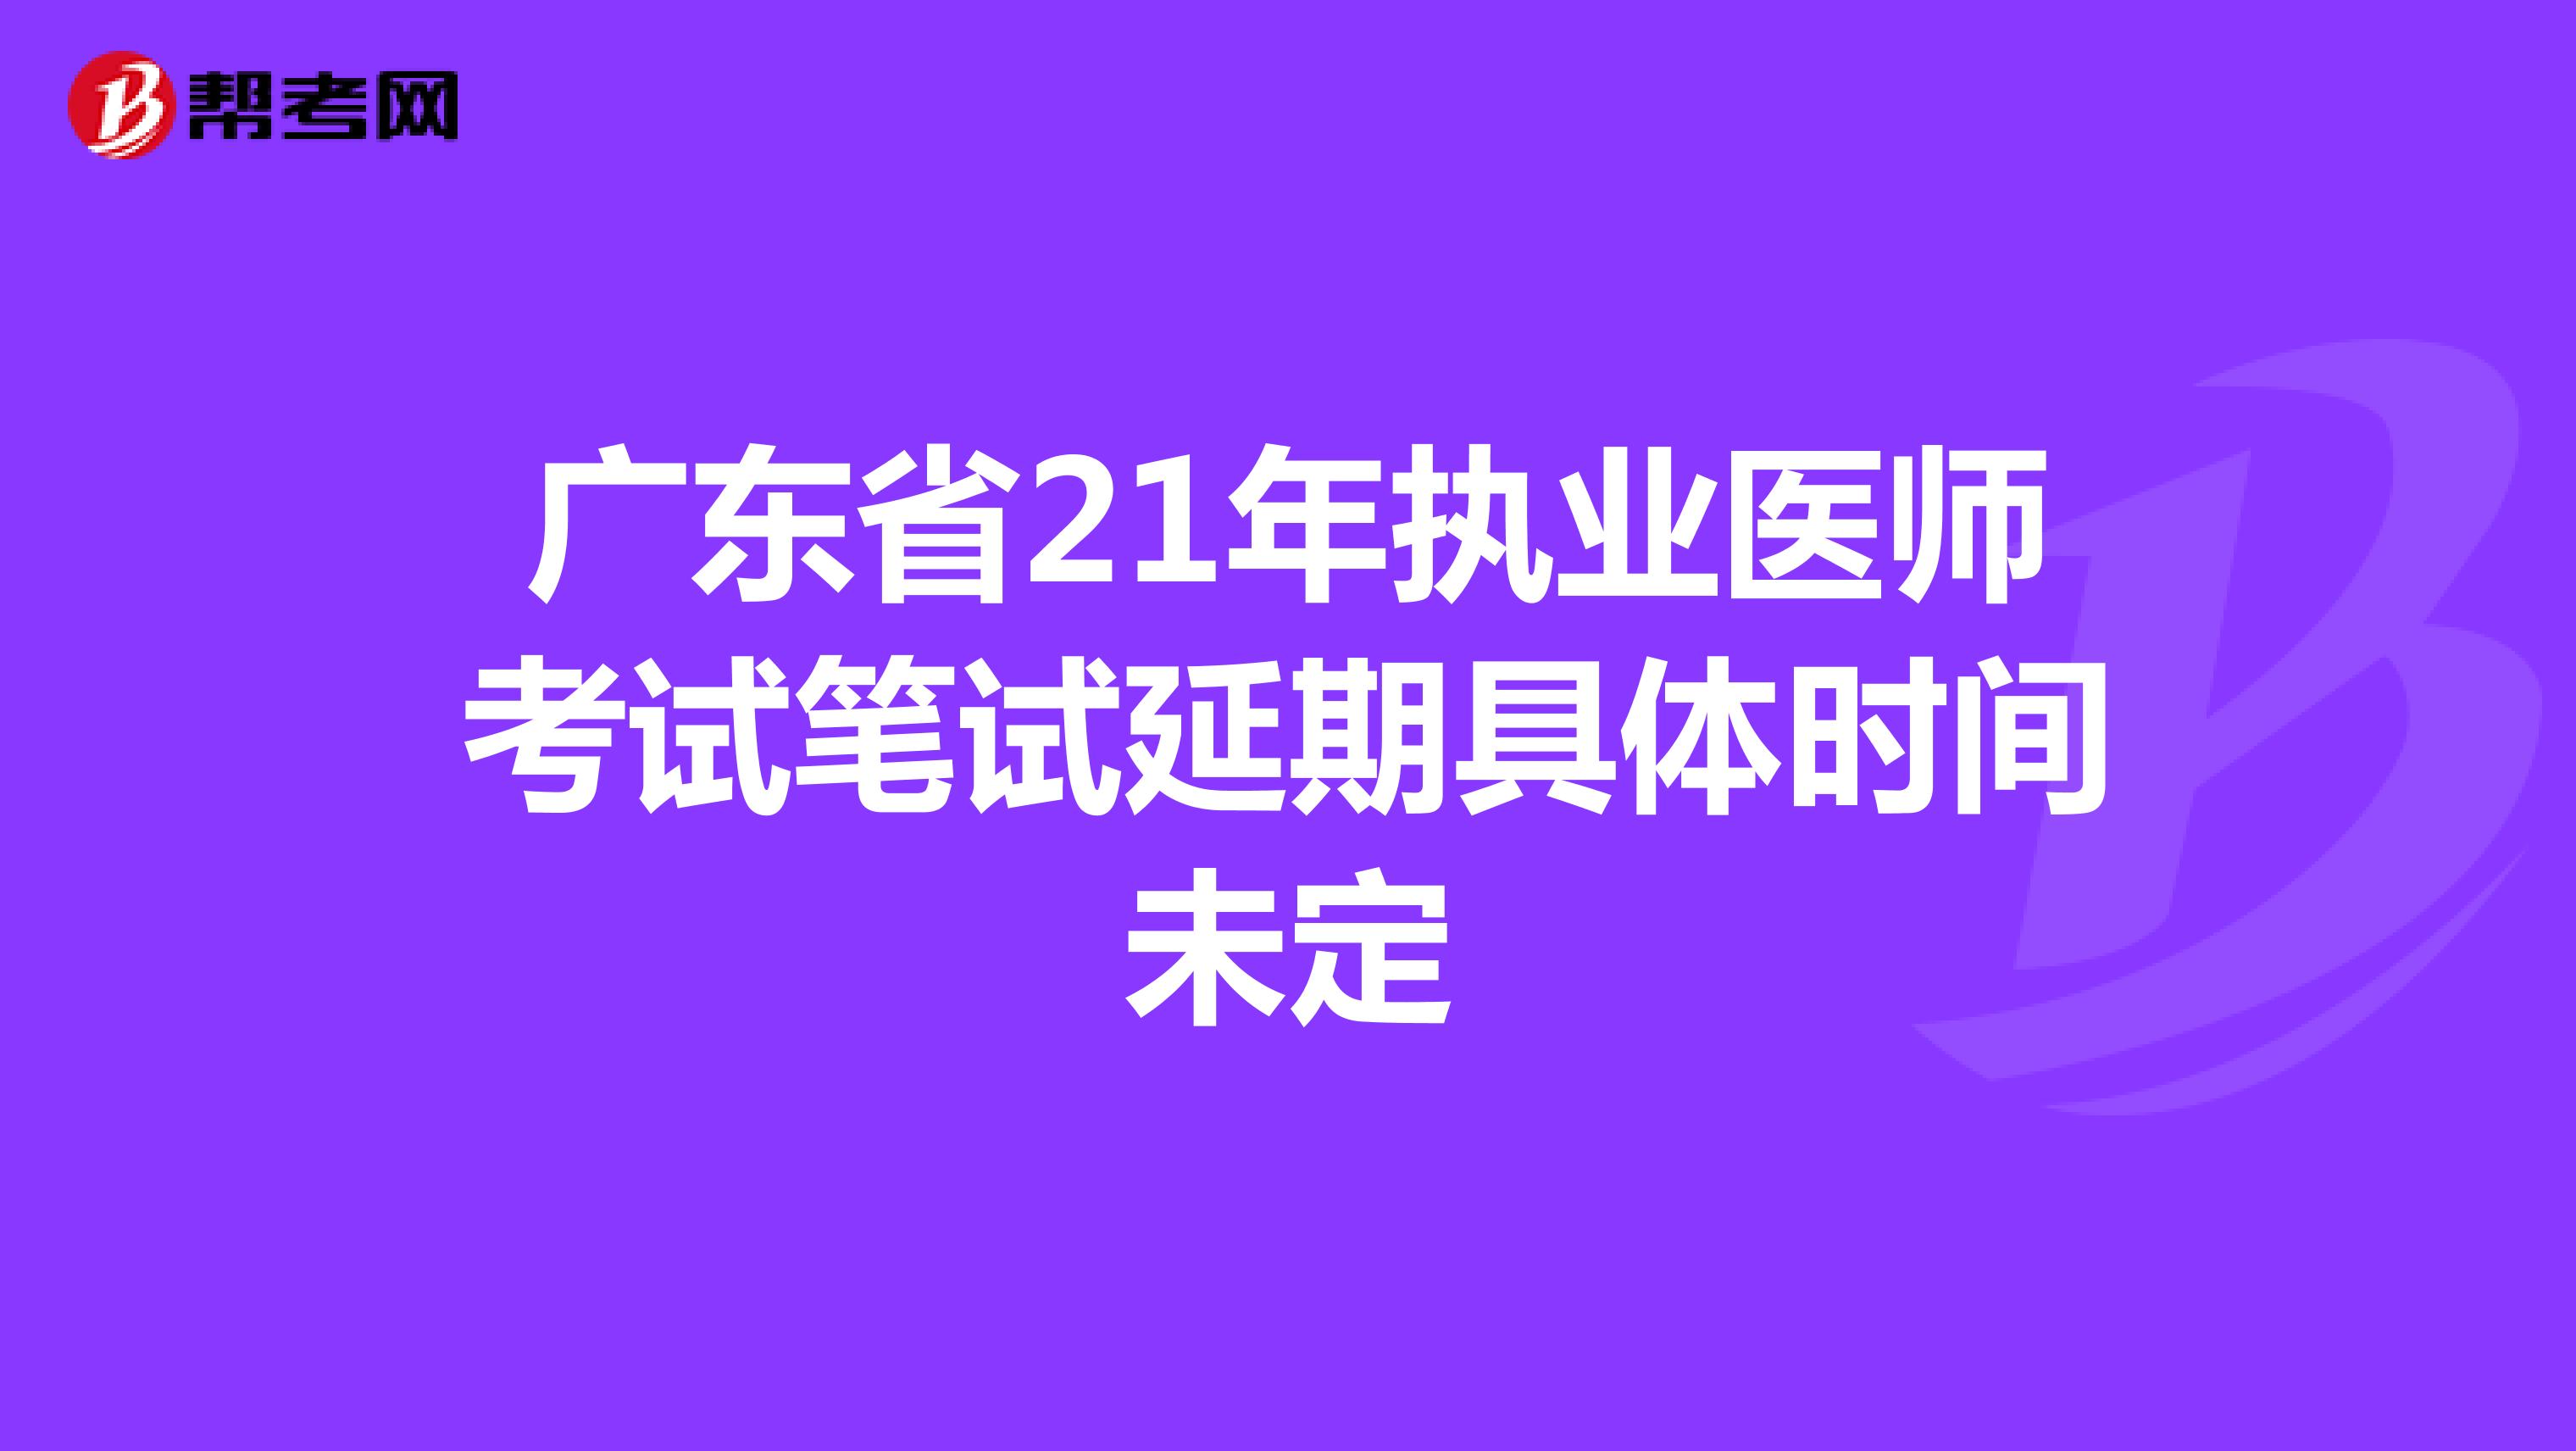 广东省21年执业医师考试笔试延期具体时间未定